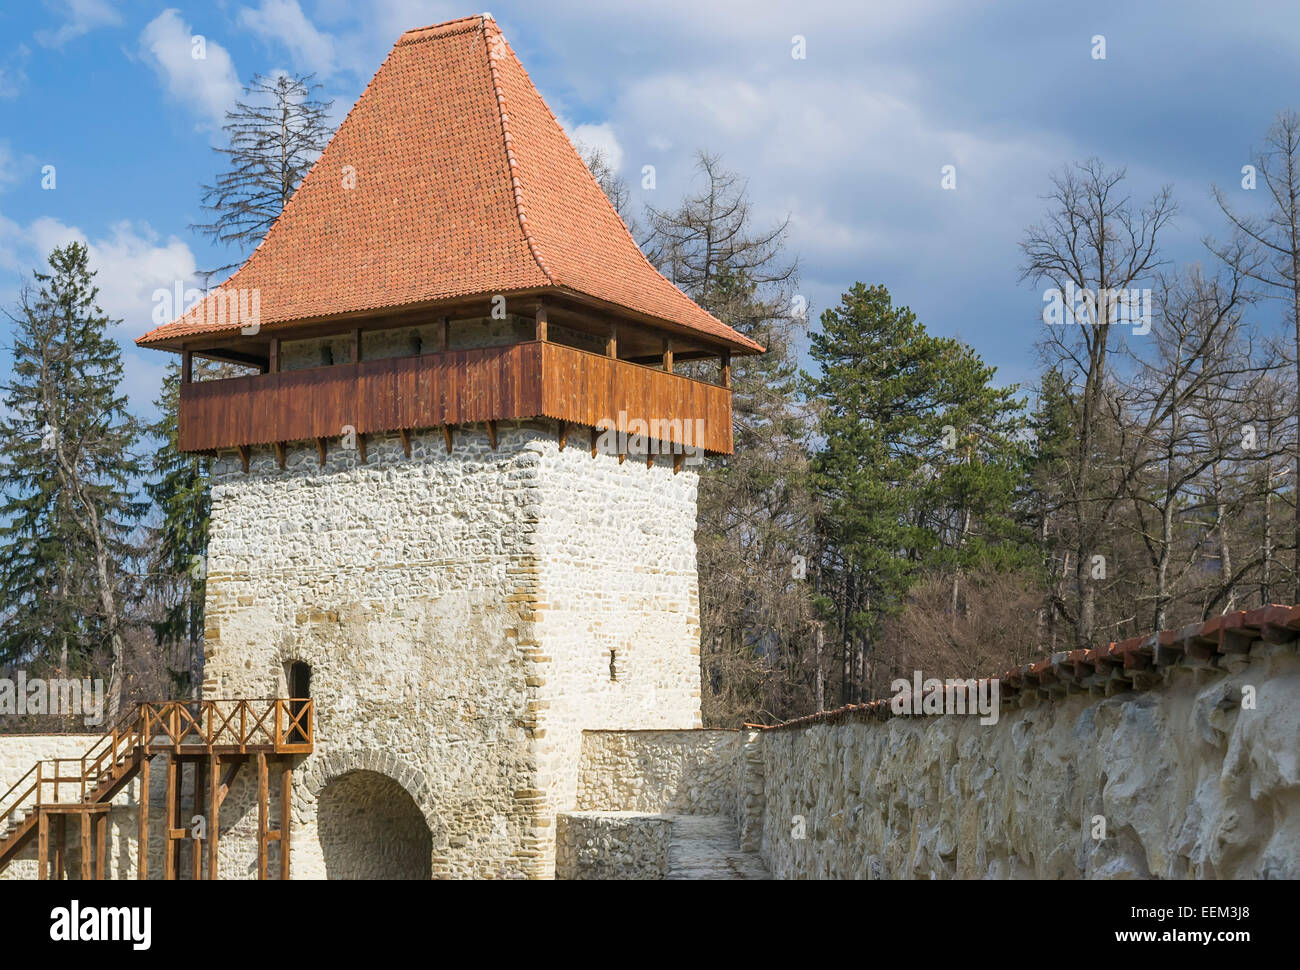 La tour de défense et d'observation d'une citadelle médiévale Banque D'Images